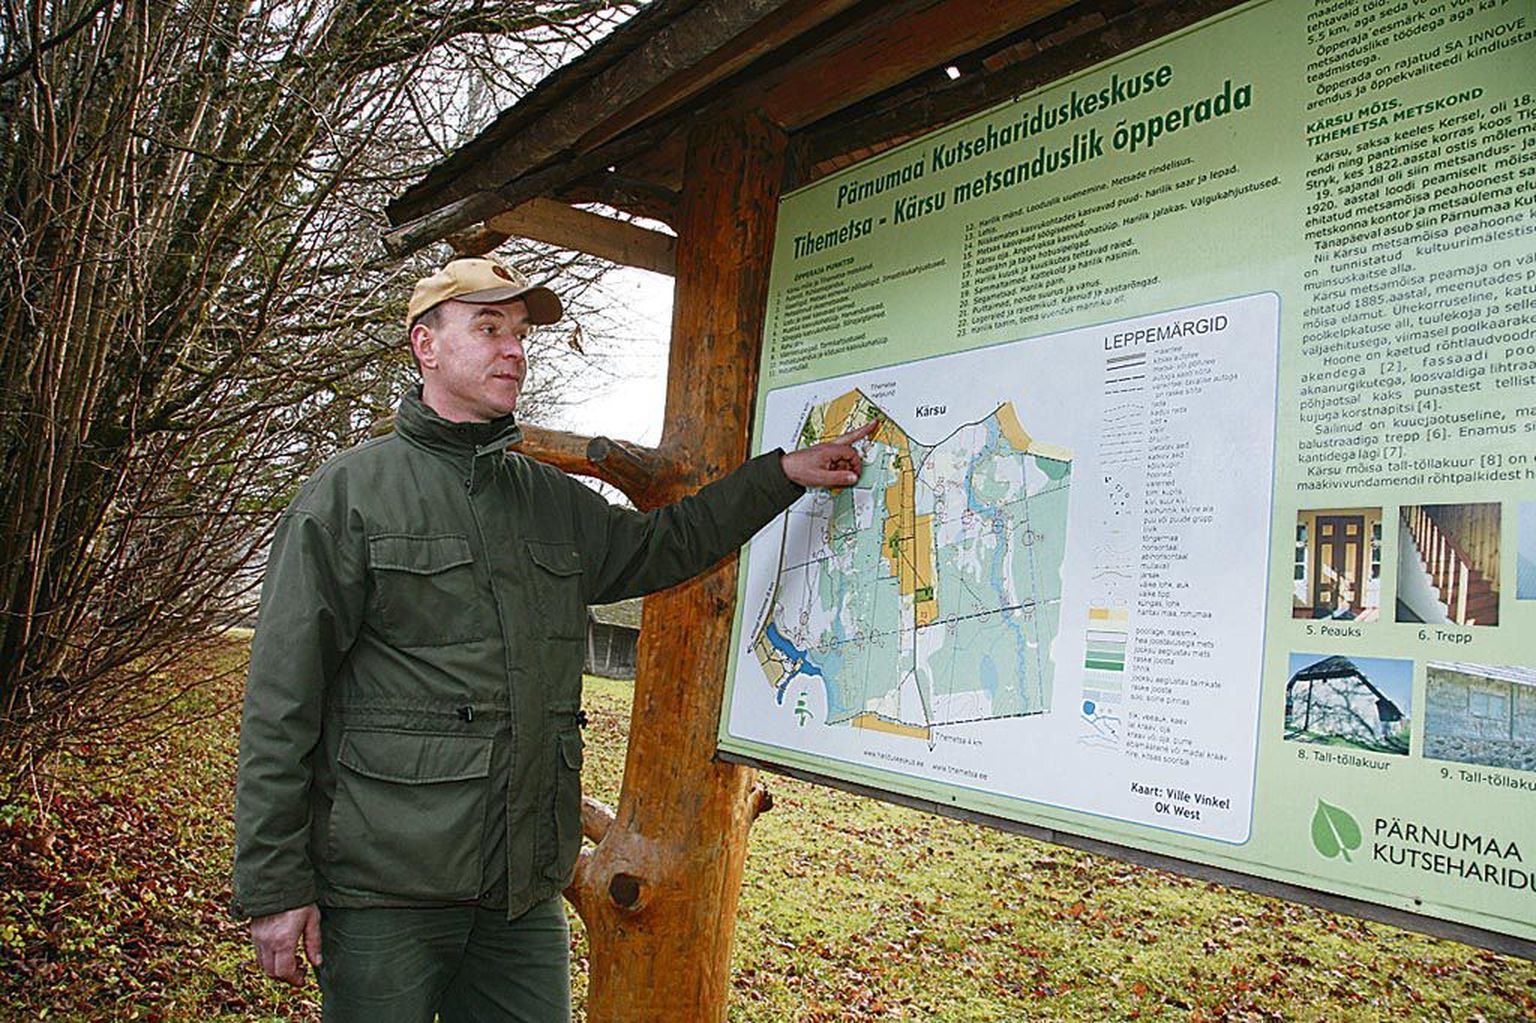 Pärnumaa kutsehariduskeskuse Tihemetsa metskonna metsaülem Väino Lill näitab Tihemetsa–Kärsu metsandusliku looduse õpperaja kaardil selle alguspunkti.